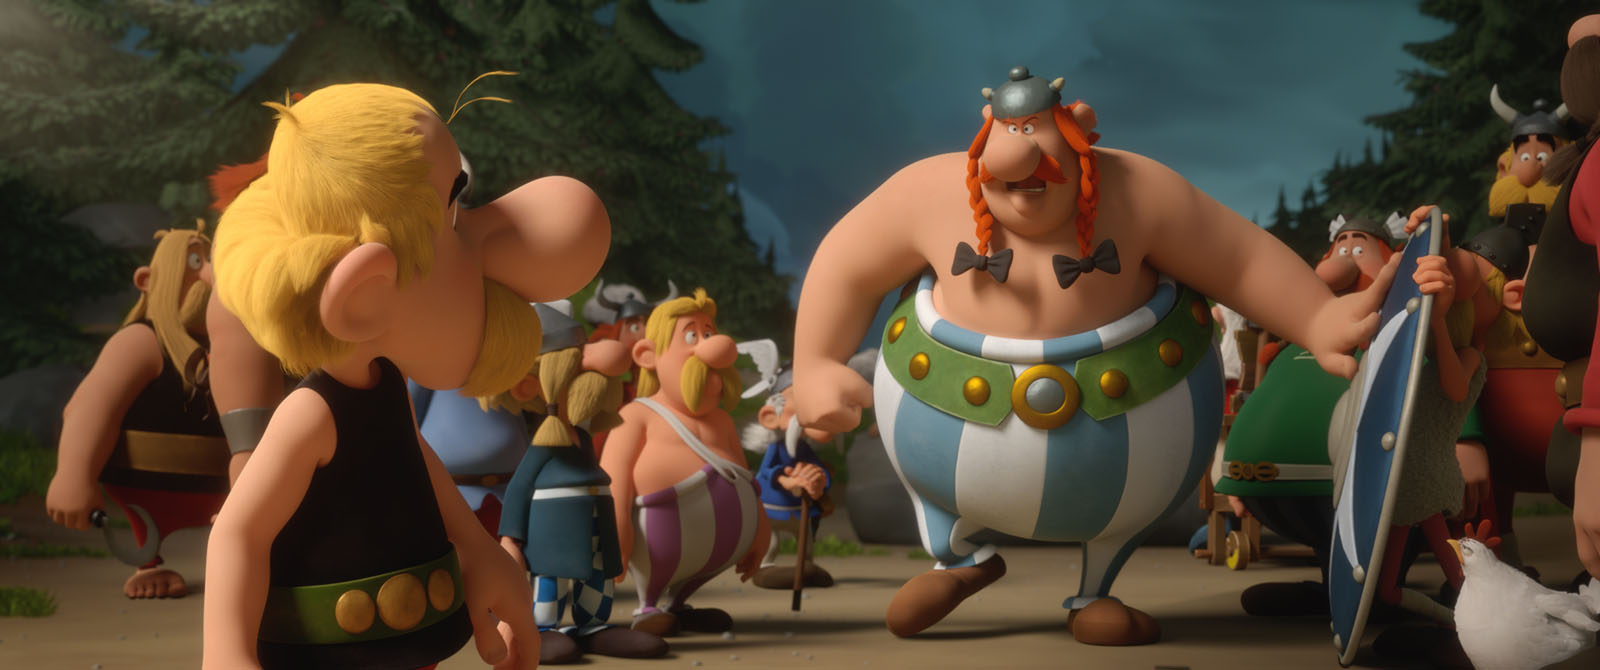 Obelix Asterixia vastaan